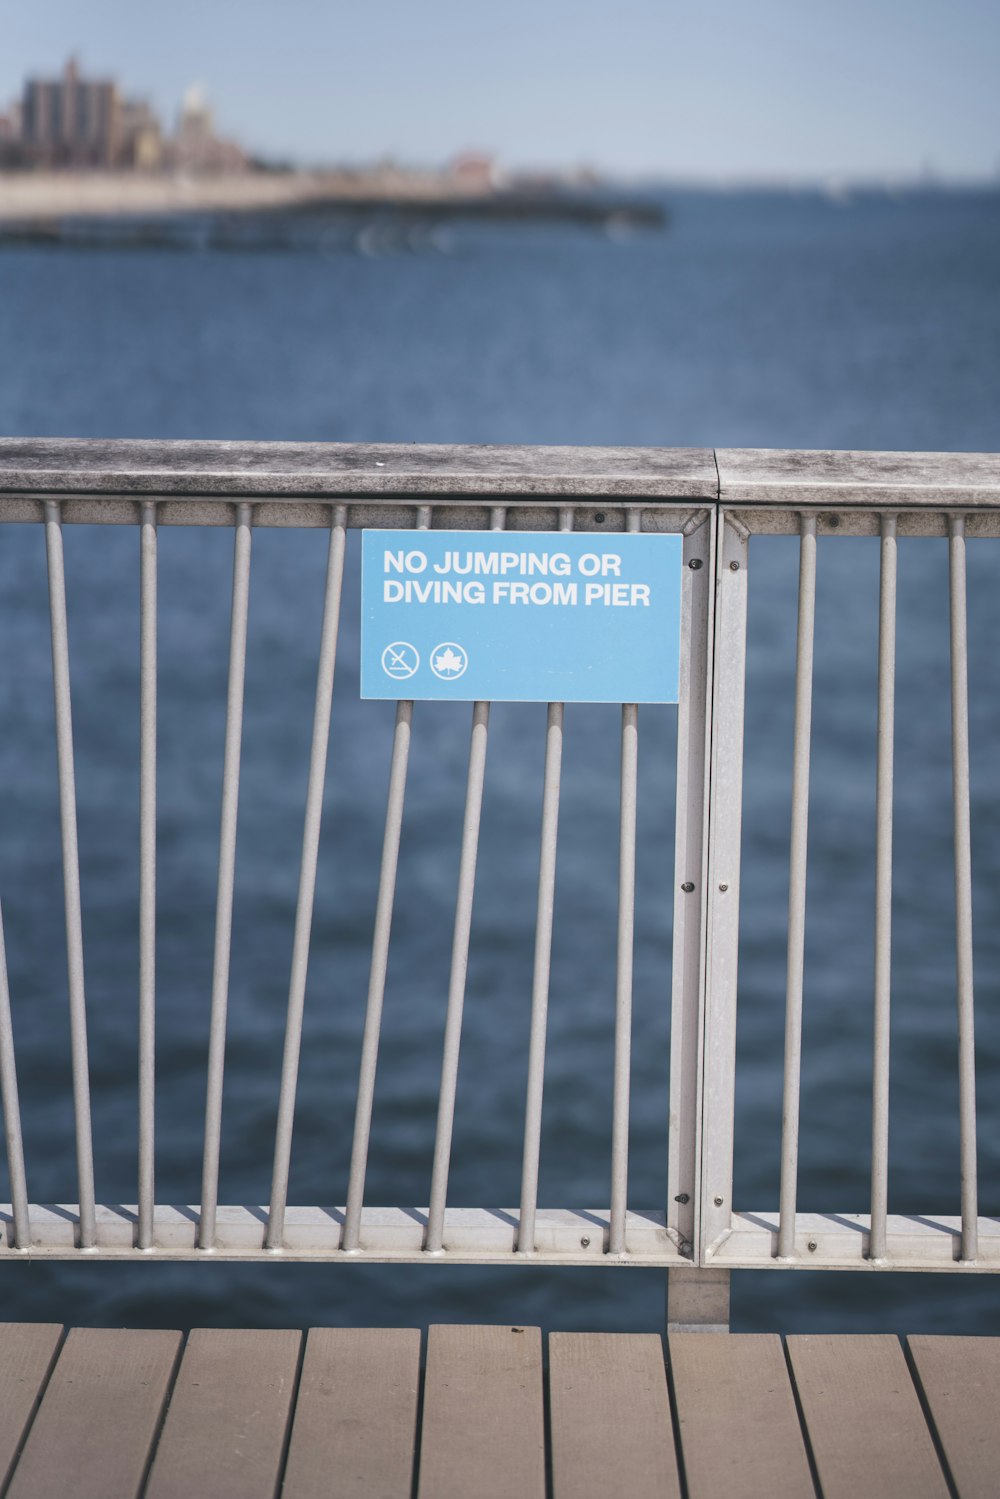 金属フェンスの桟橋の看板からのジャンプやダイビングはありません